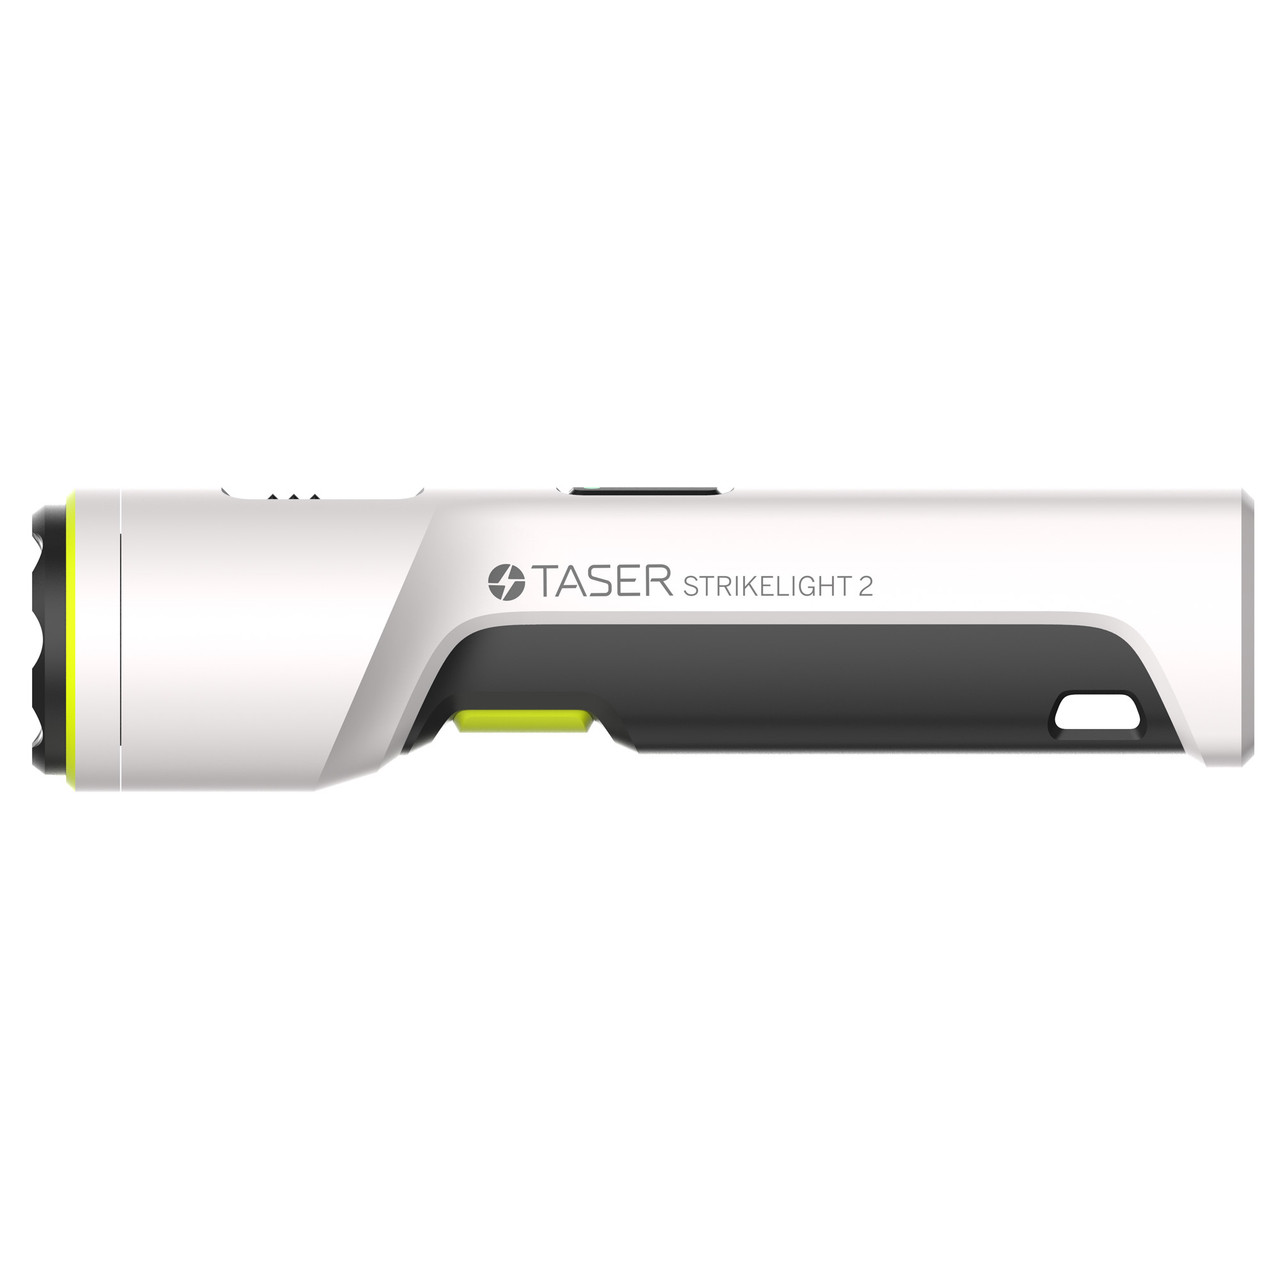 TASER Strikelight 2: High-Intensity Flashlight & Stun Gun